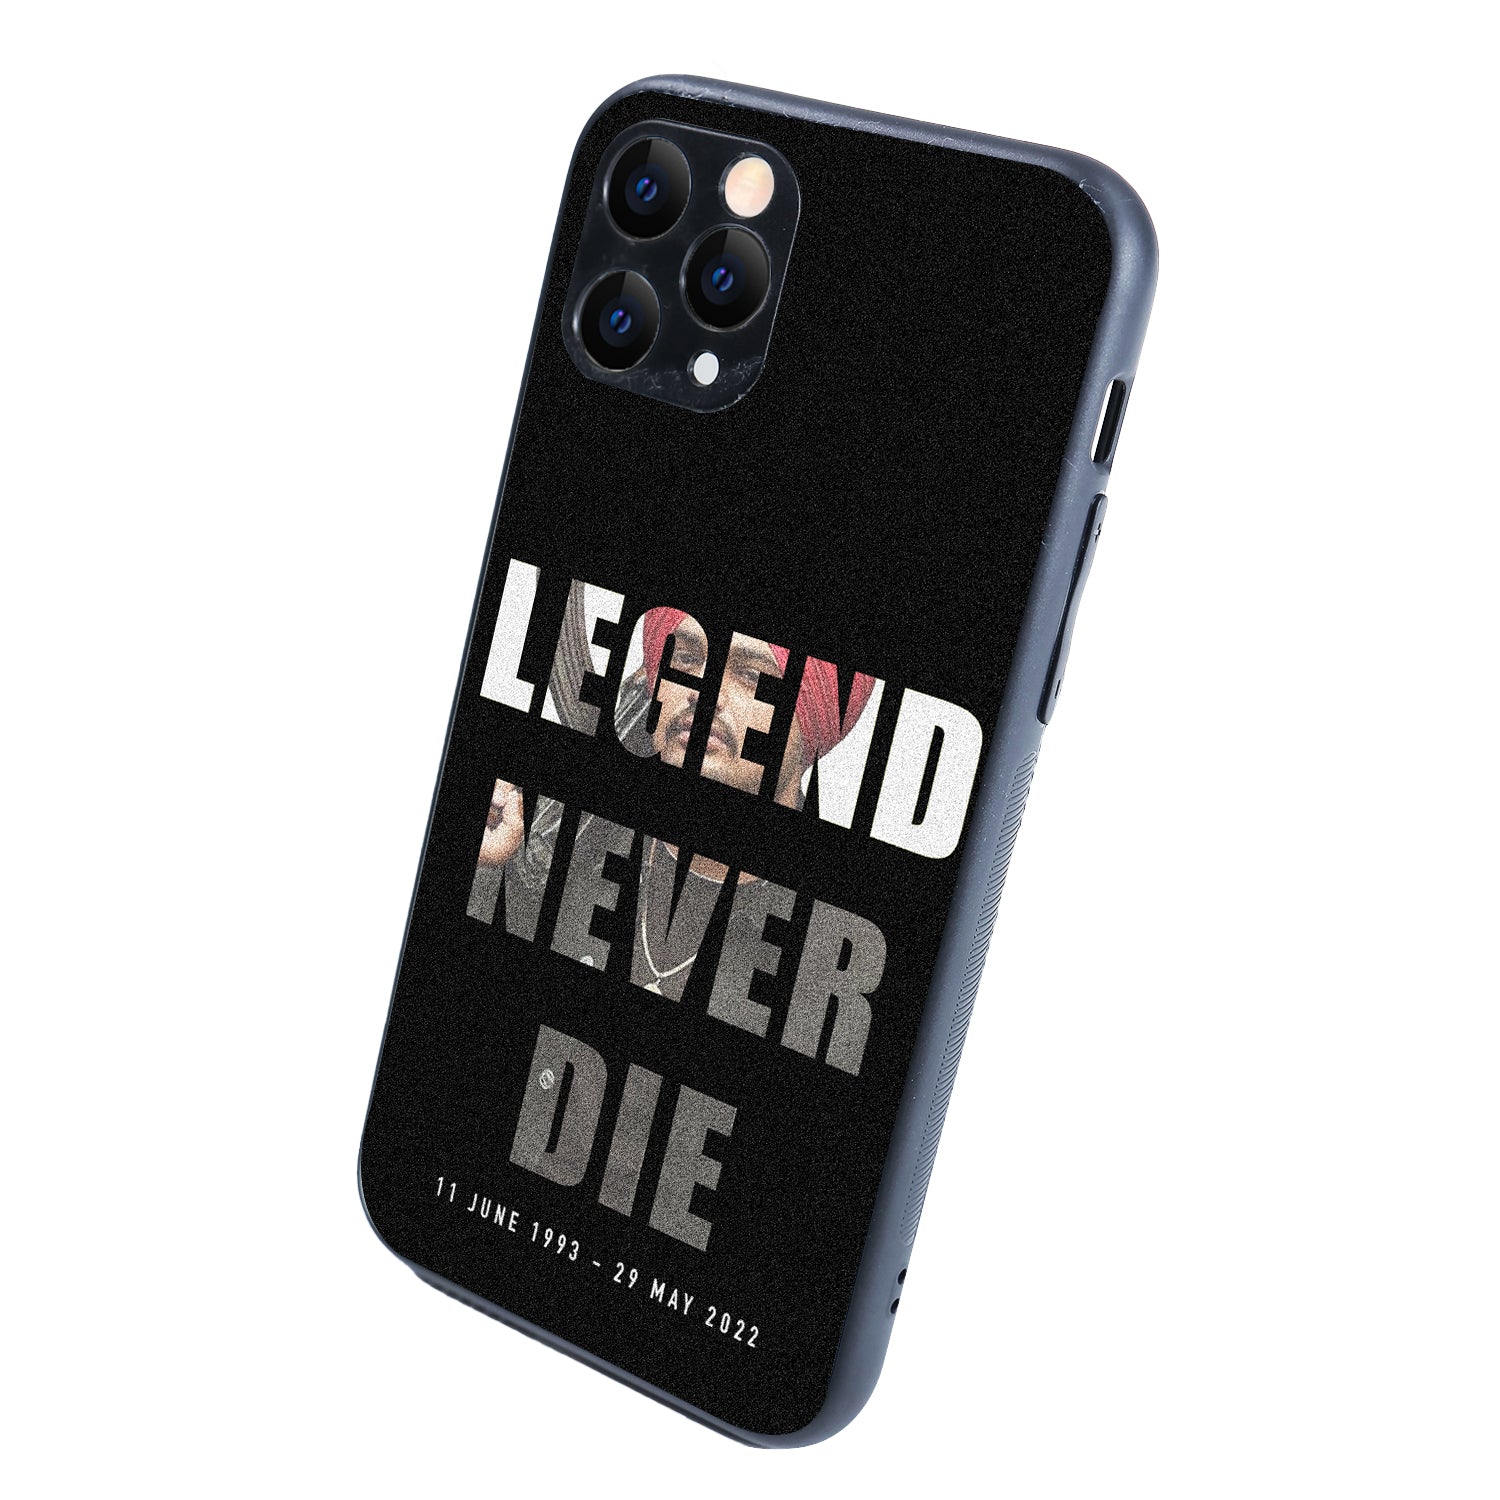 Legend Never Die 2.0 Sidhu Moosewala iPhone 11 Pro Case